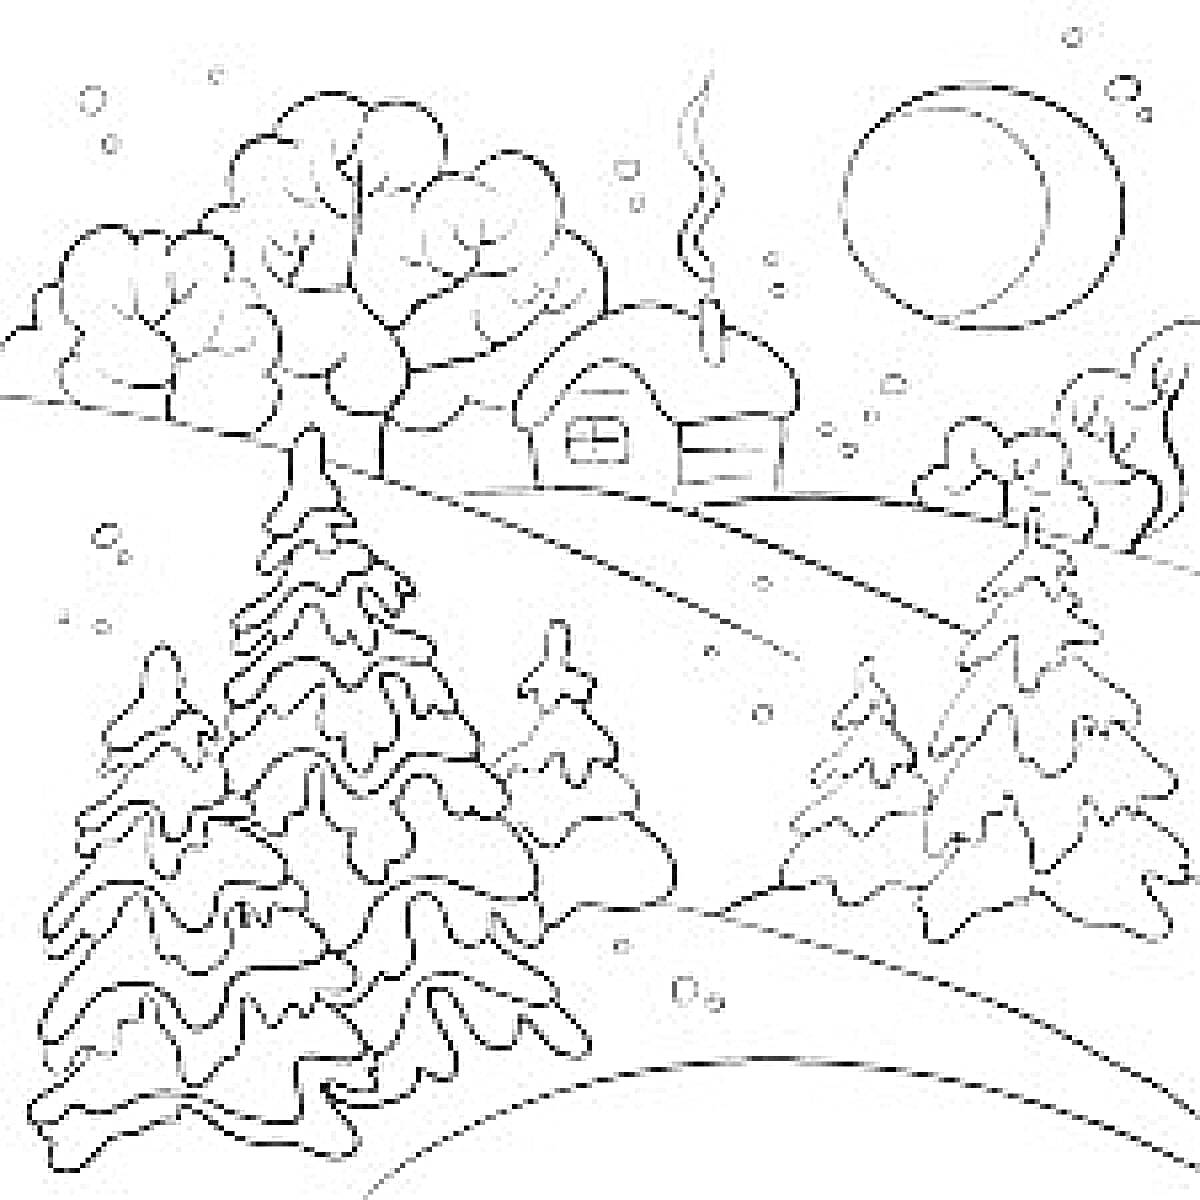  Зимний пейзаж с заснеженными ёлками и домом на холме под луной